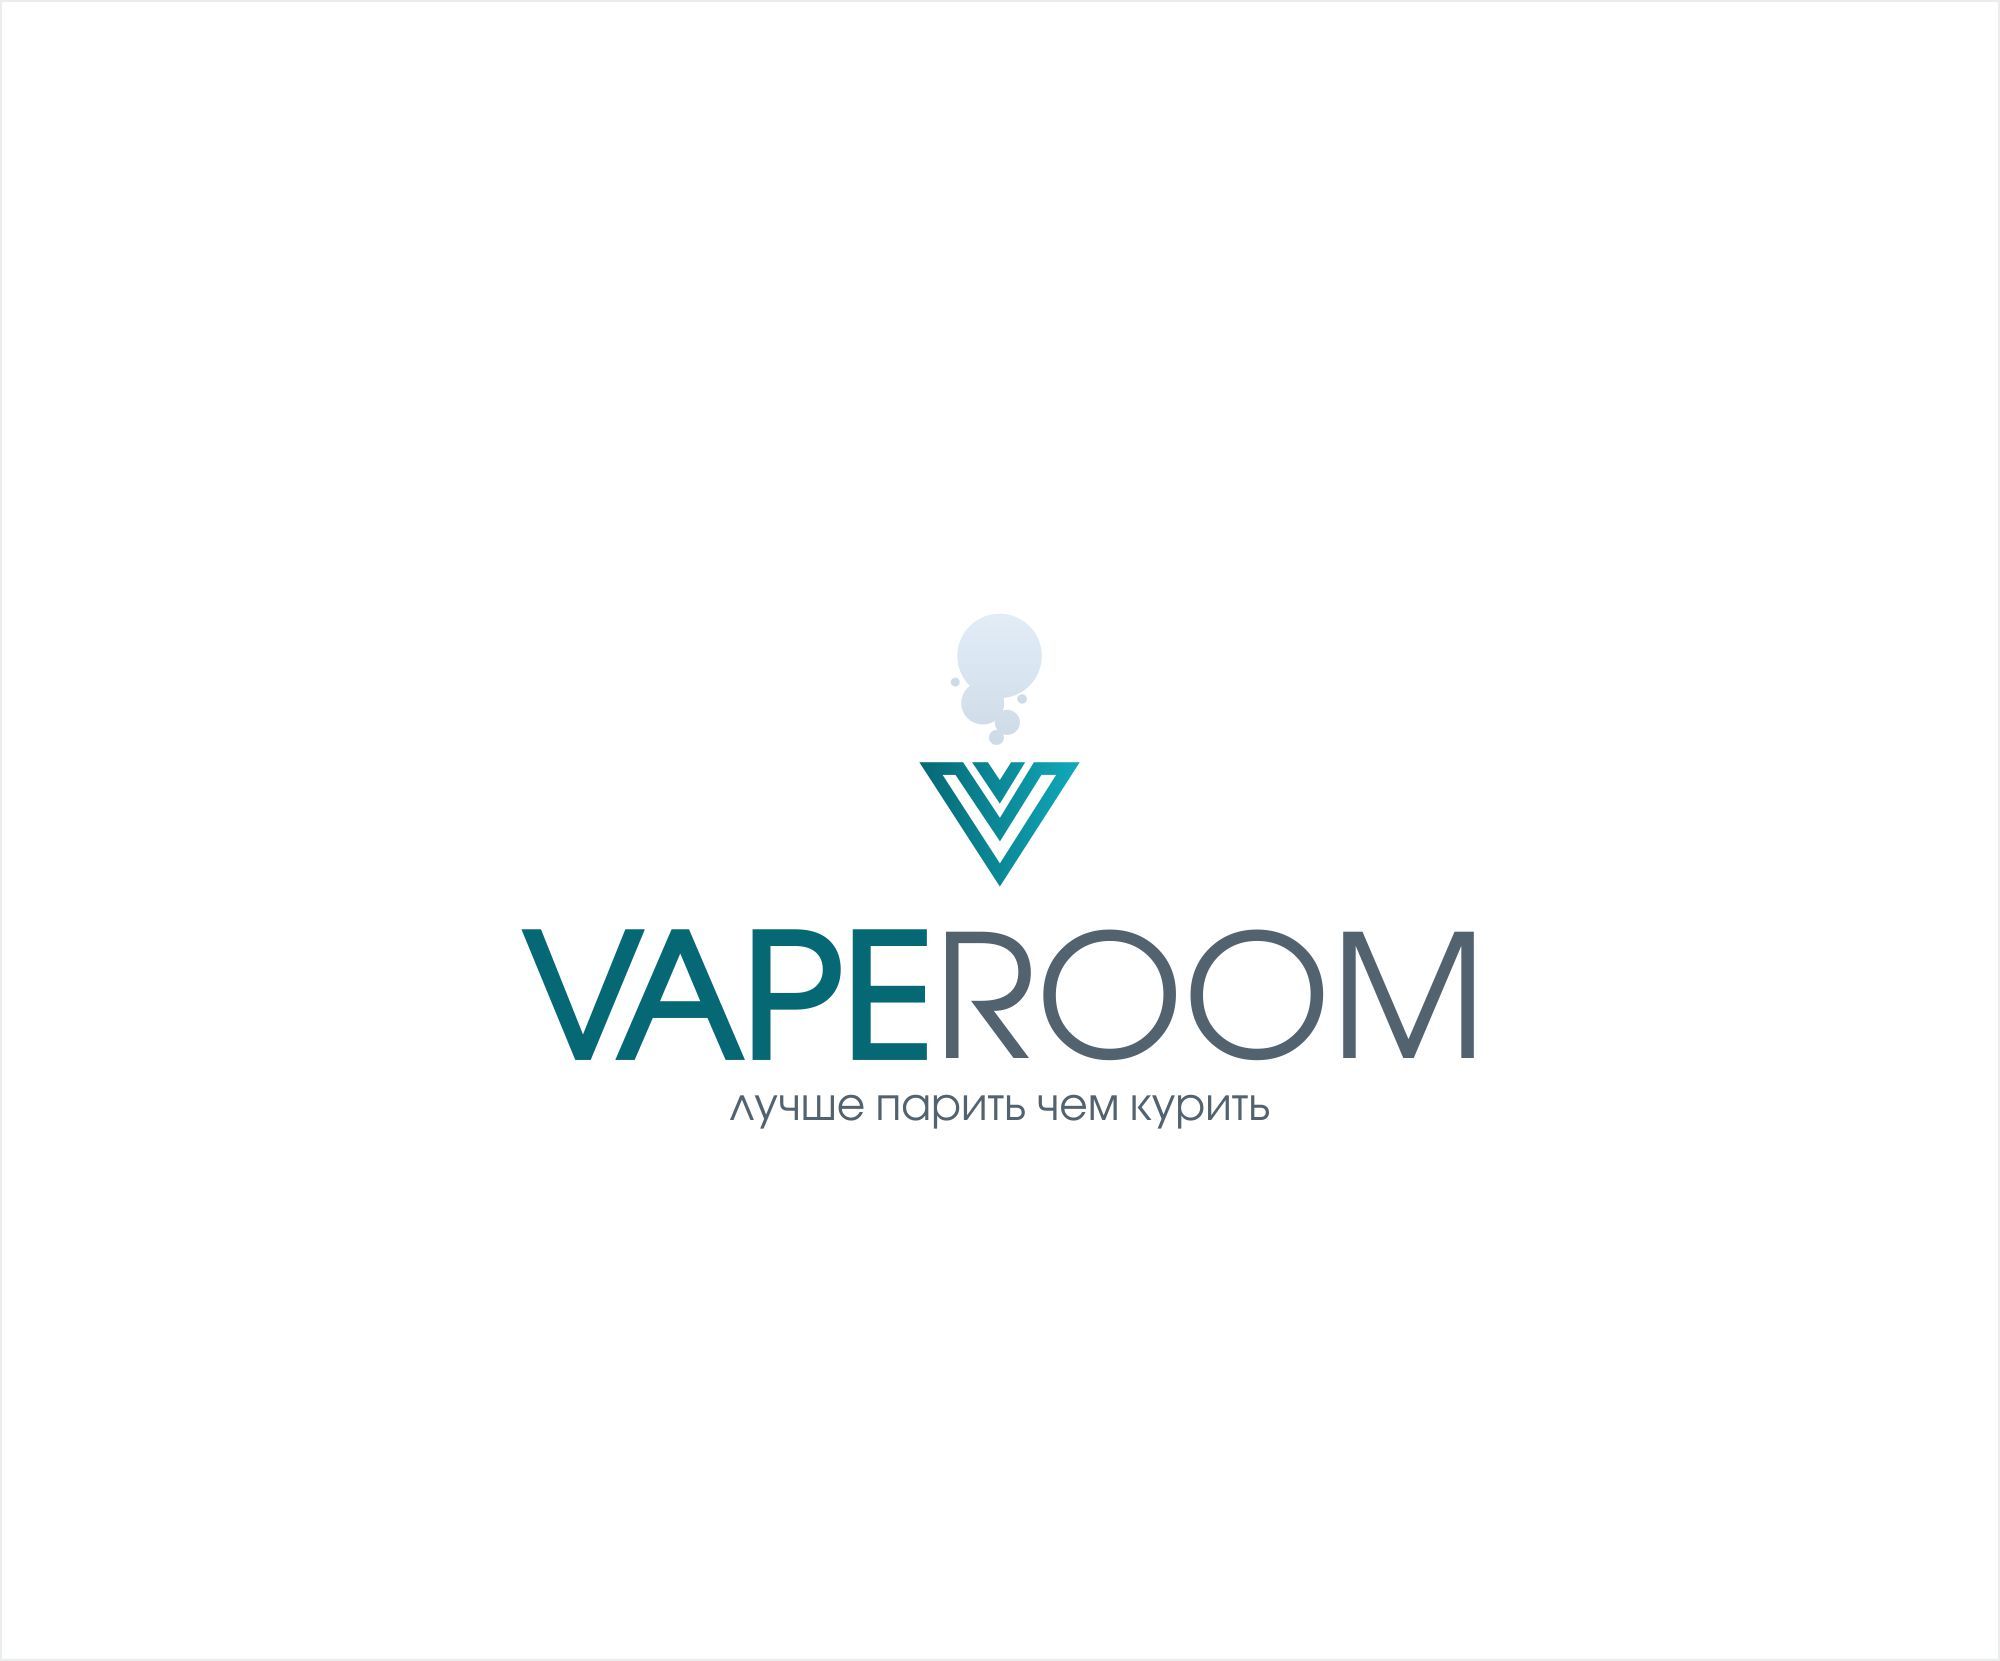 Логотип для сети магазинов VapeRoom  - дизайнер AnnAF90